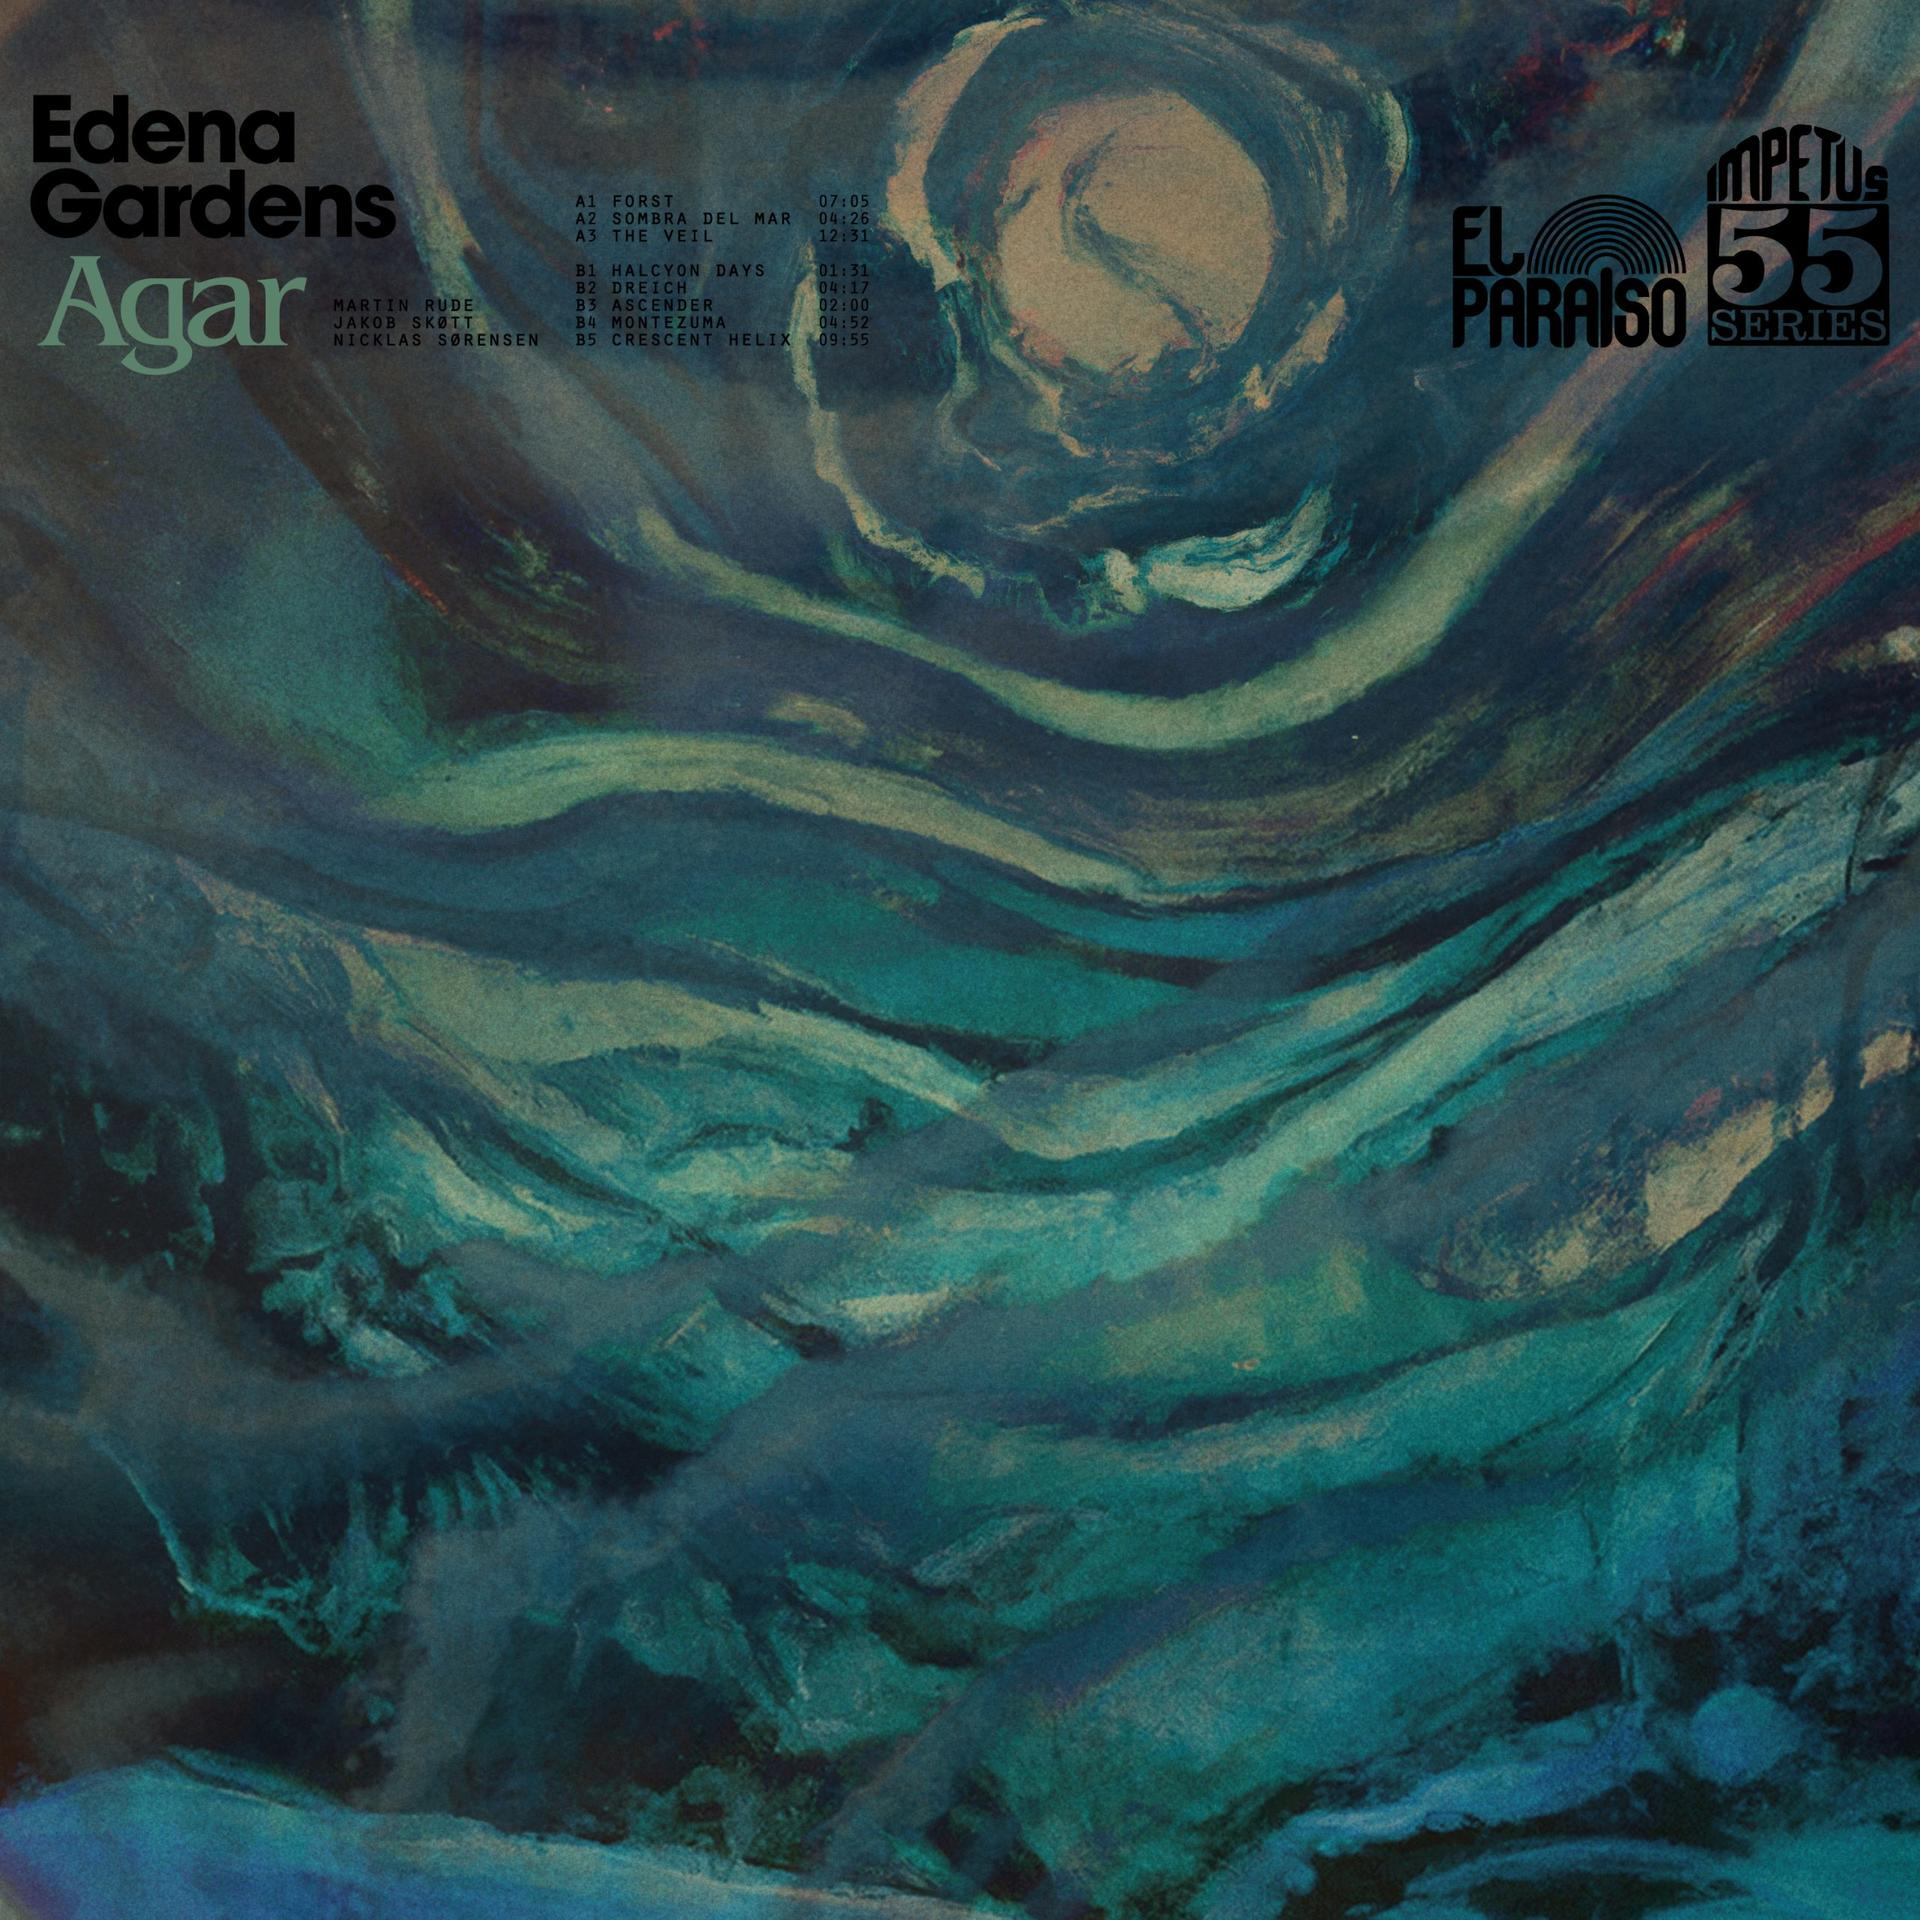 - Edena (CD) Gardens Agar -